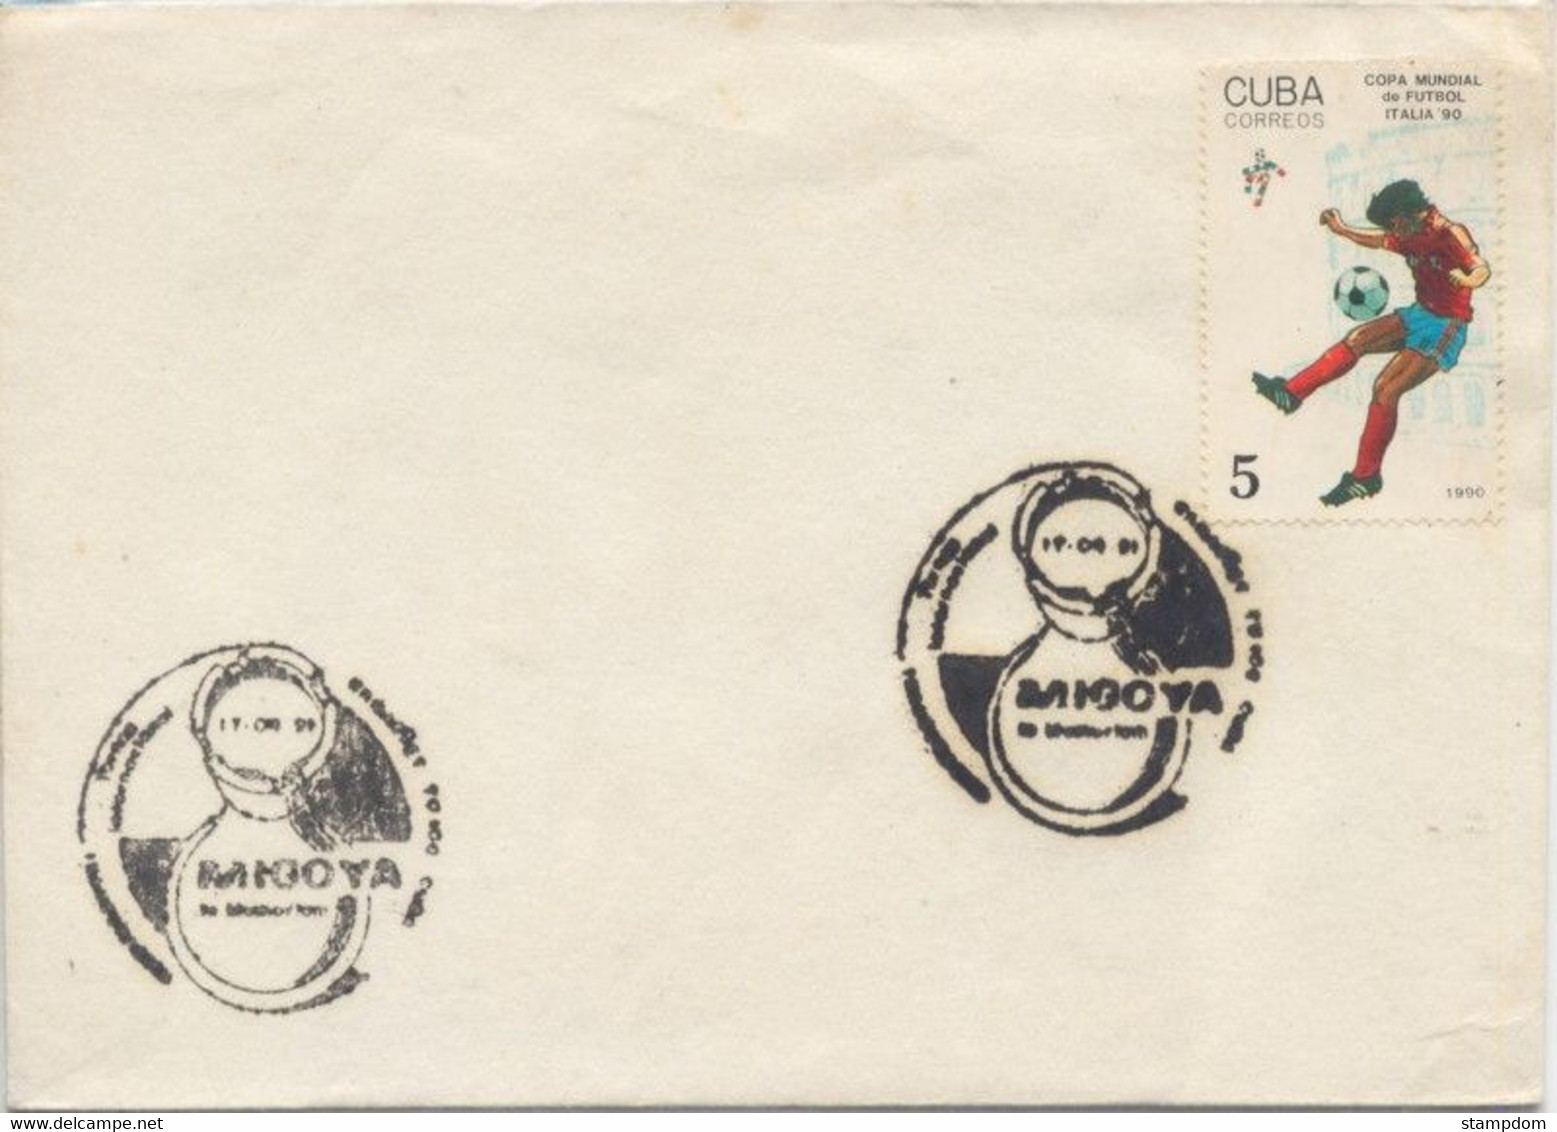 CUBA 1991 MIGOYA Special Cancel Event COVER @D1713 - Briefe U. Dokumente